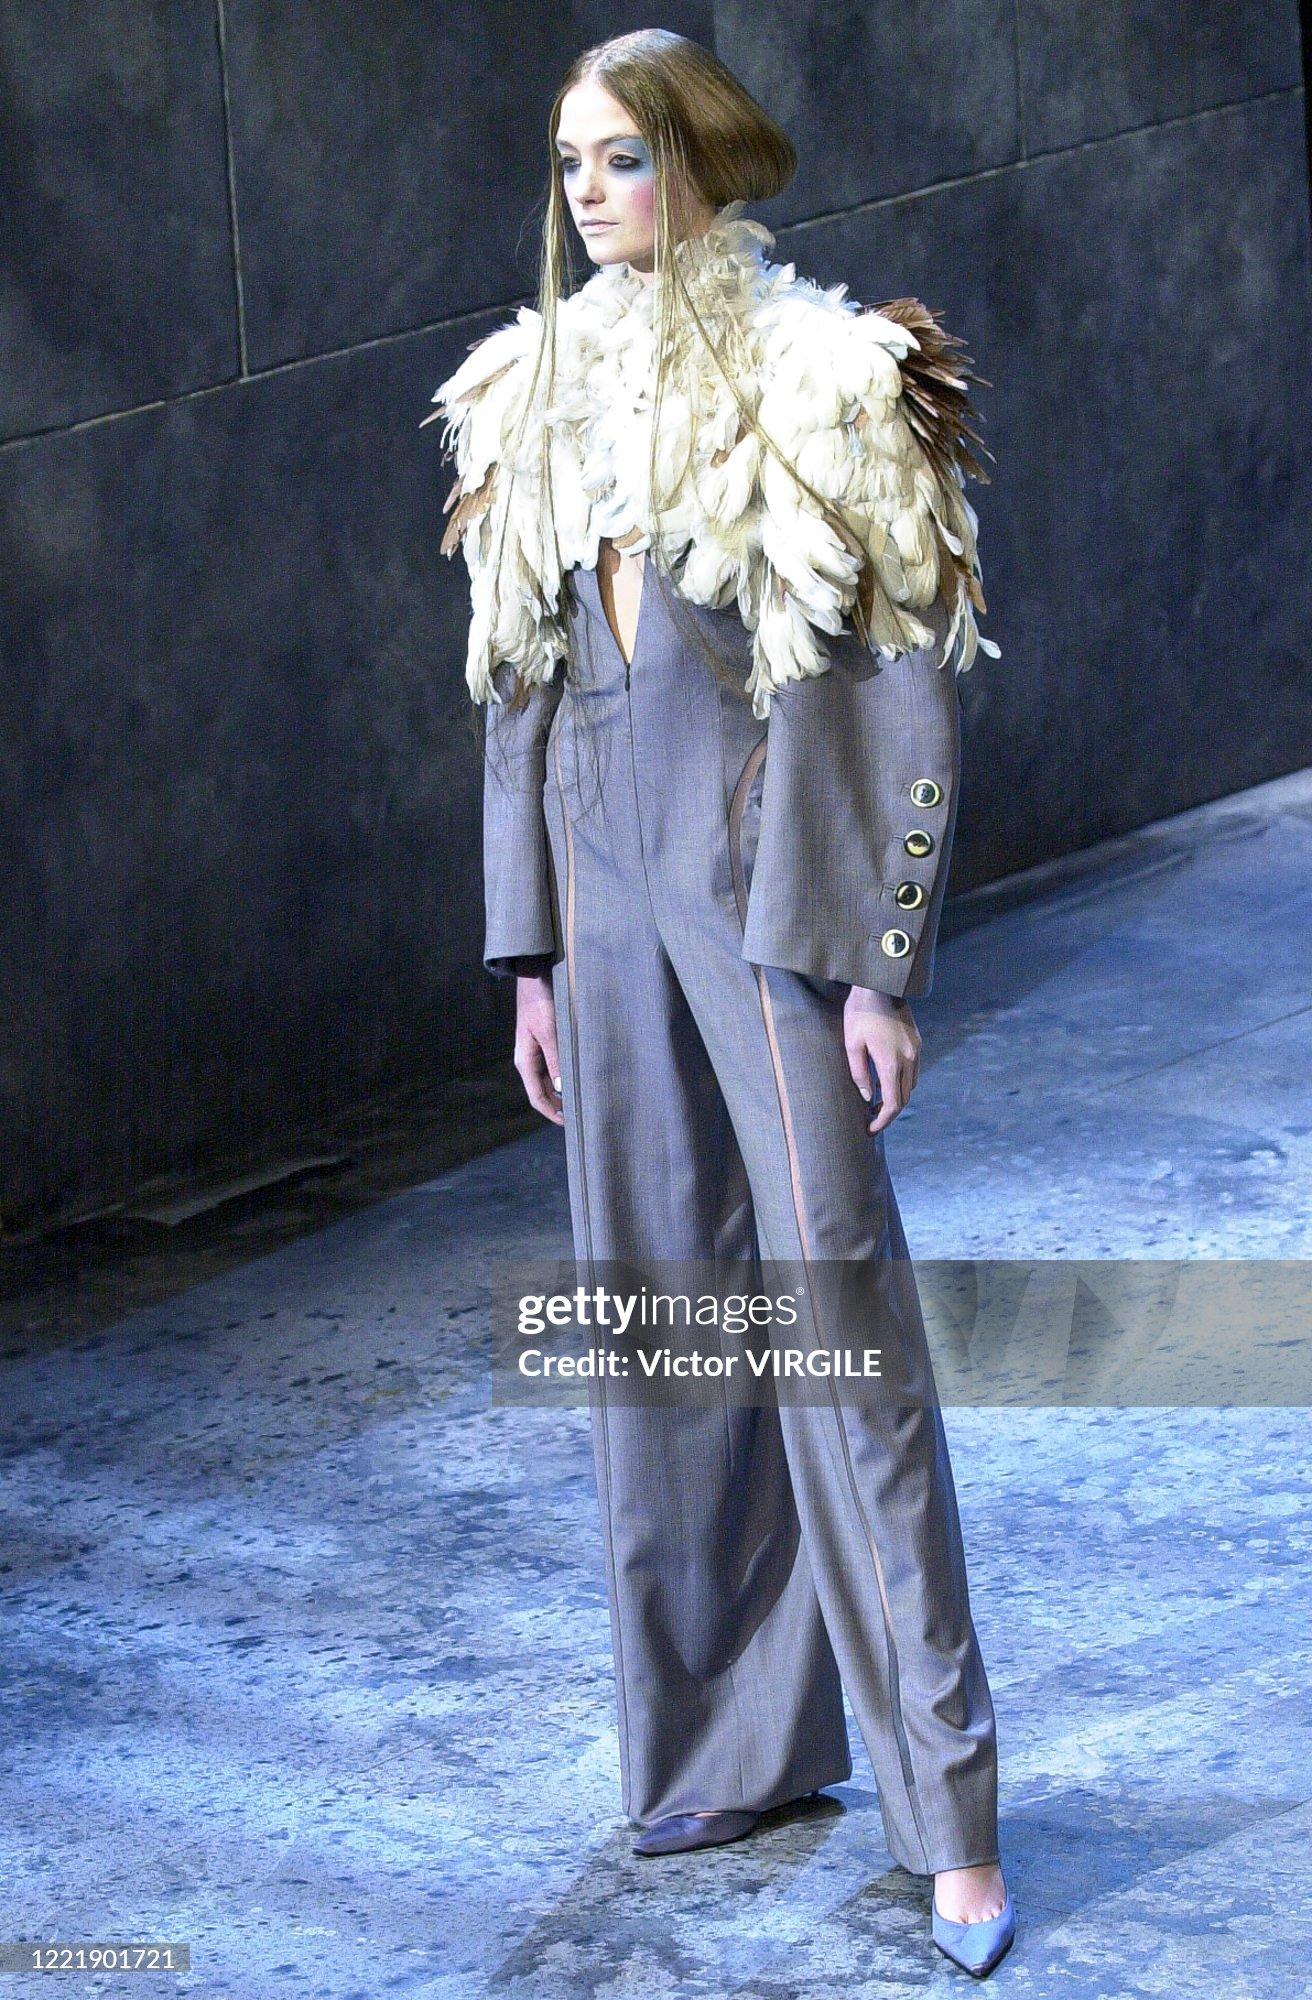 Givenchy Haute Couture 
par Alexander McQueen
Printemps 2000 - version très similaire à celle vue sur le podium. Le nôtre a été fabriqué sur commande pour un client, il est donc très probable qu'il soit unique en son genre.

Combinaison en laine